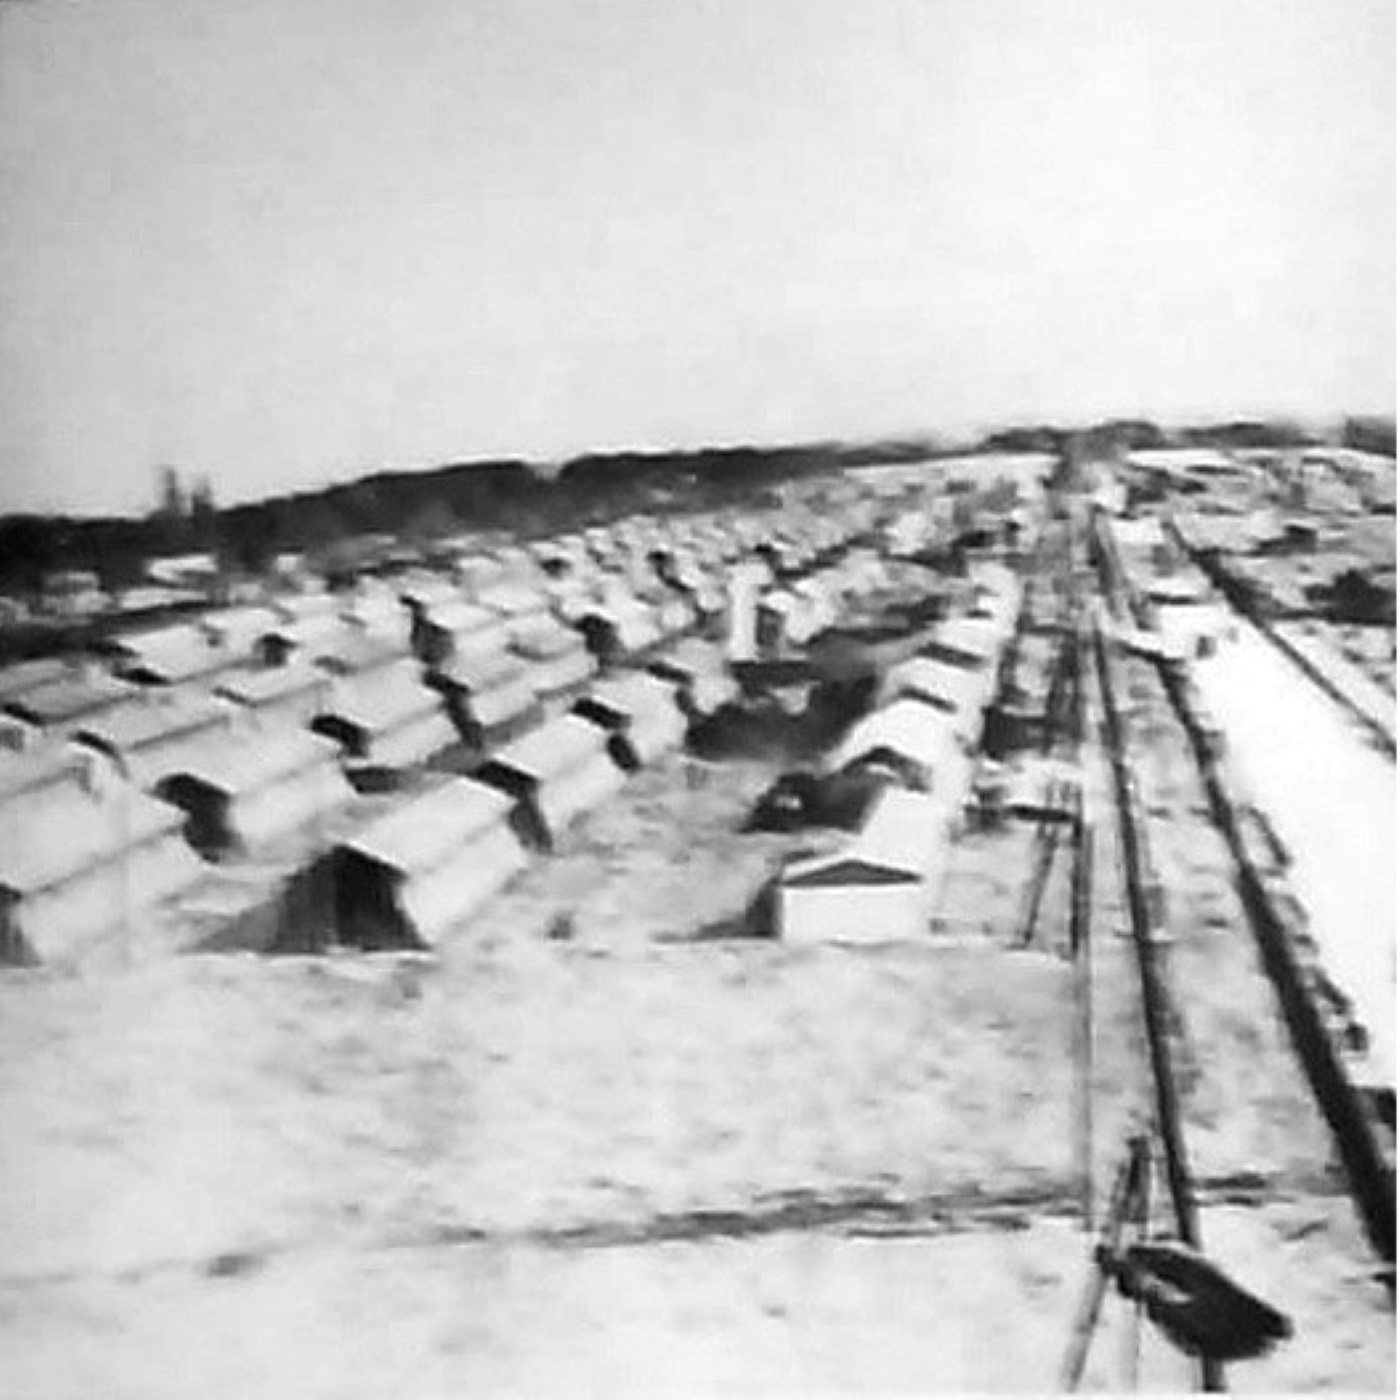 Y-056: Reinhard Heydrich, Bericht über die Deportationen nach Gurs (1940)